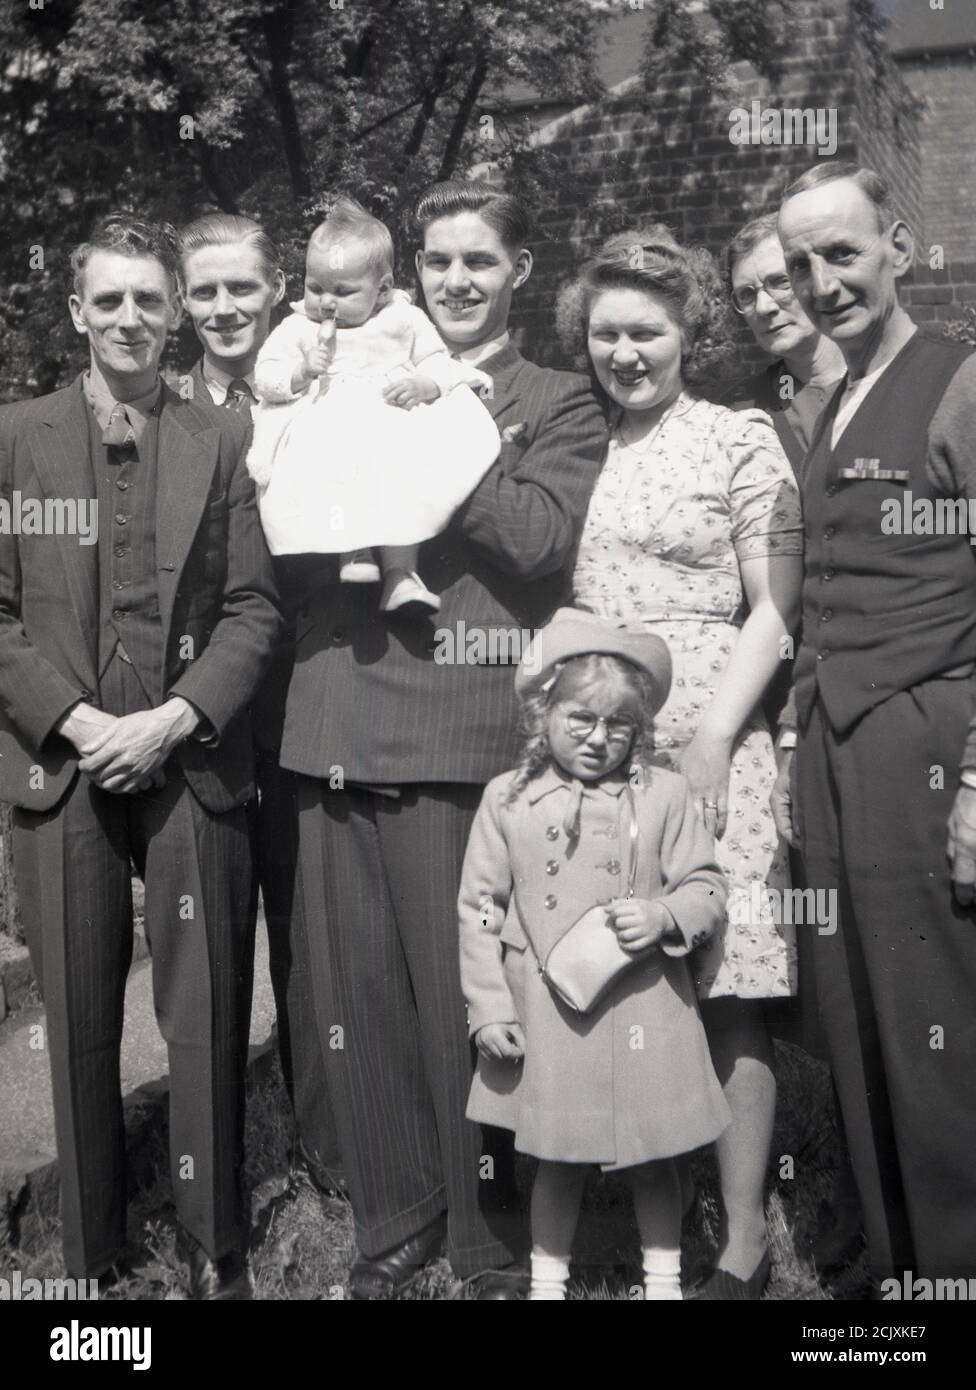 1950er Jahre, historisches Bild zeigt die Kleidung und Mode der Zeit als Familie stehen zusammen für ein Gruppenfoto, mit einem stolzen jungen Vater hält sein Kleinkind, England, Großbritannien. Stockfoto